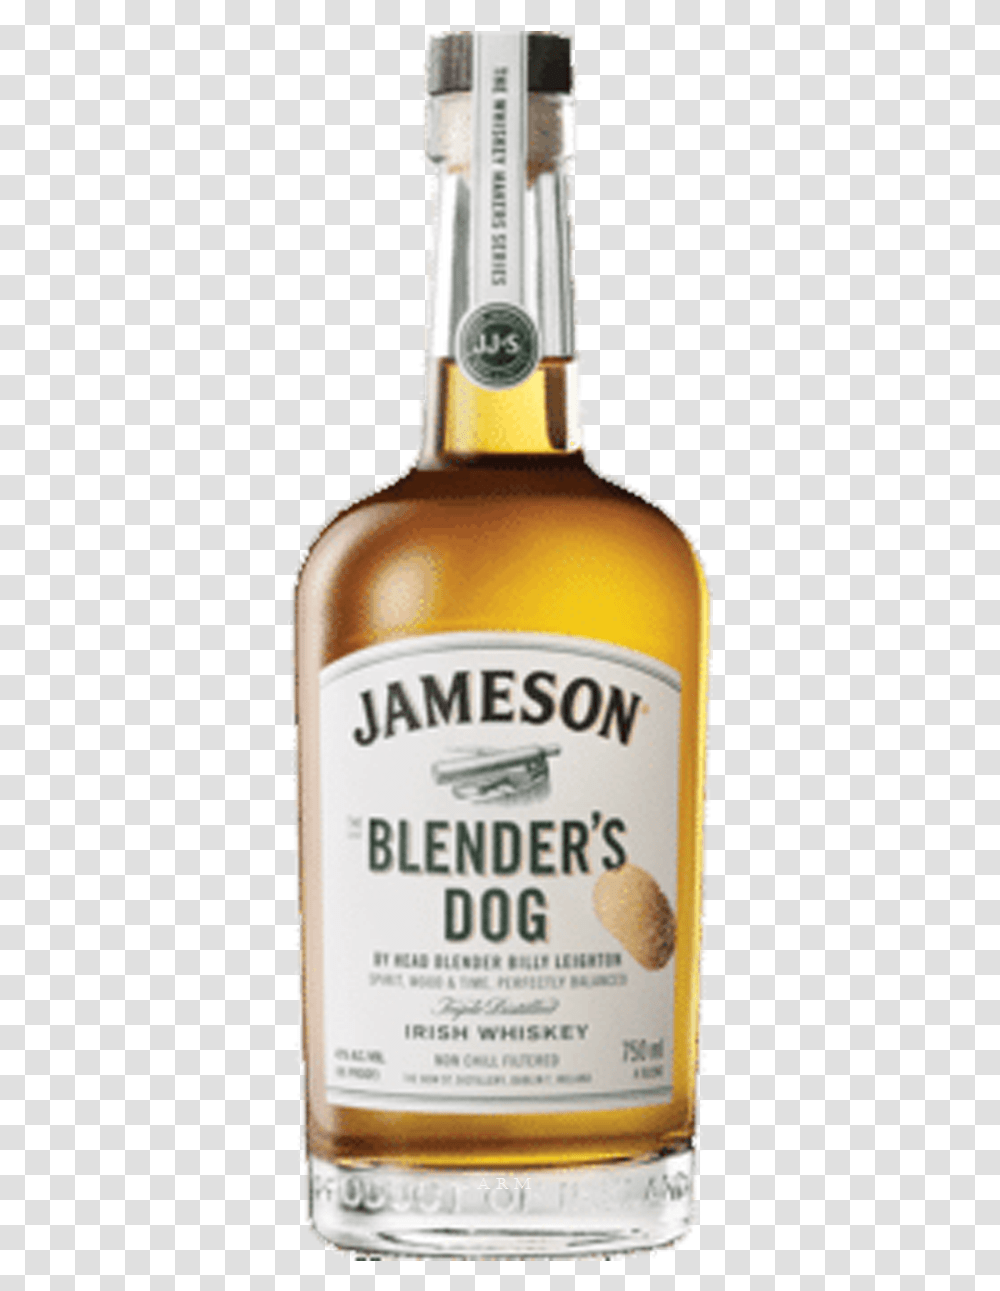 Jameson Blenders Dog Price, Liquor, Alcohol, Beverage, Drink Transparent Png